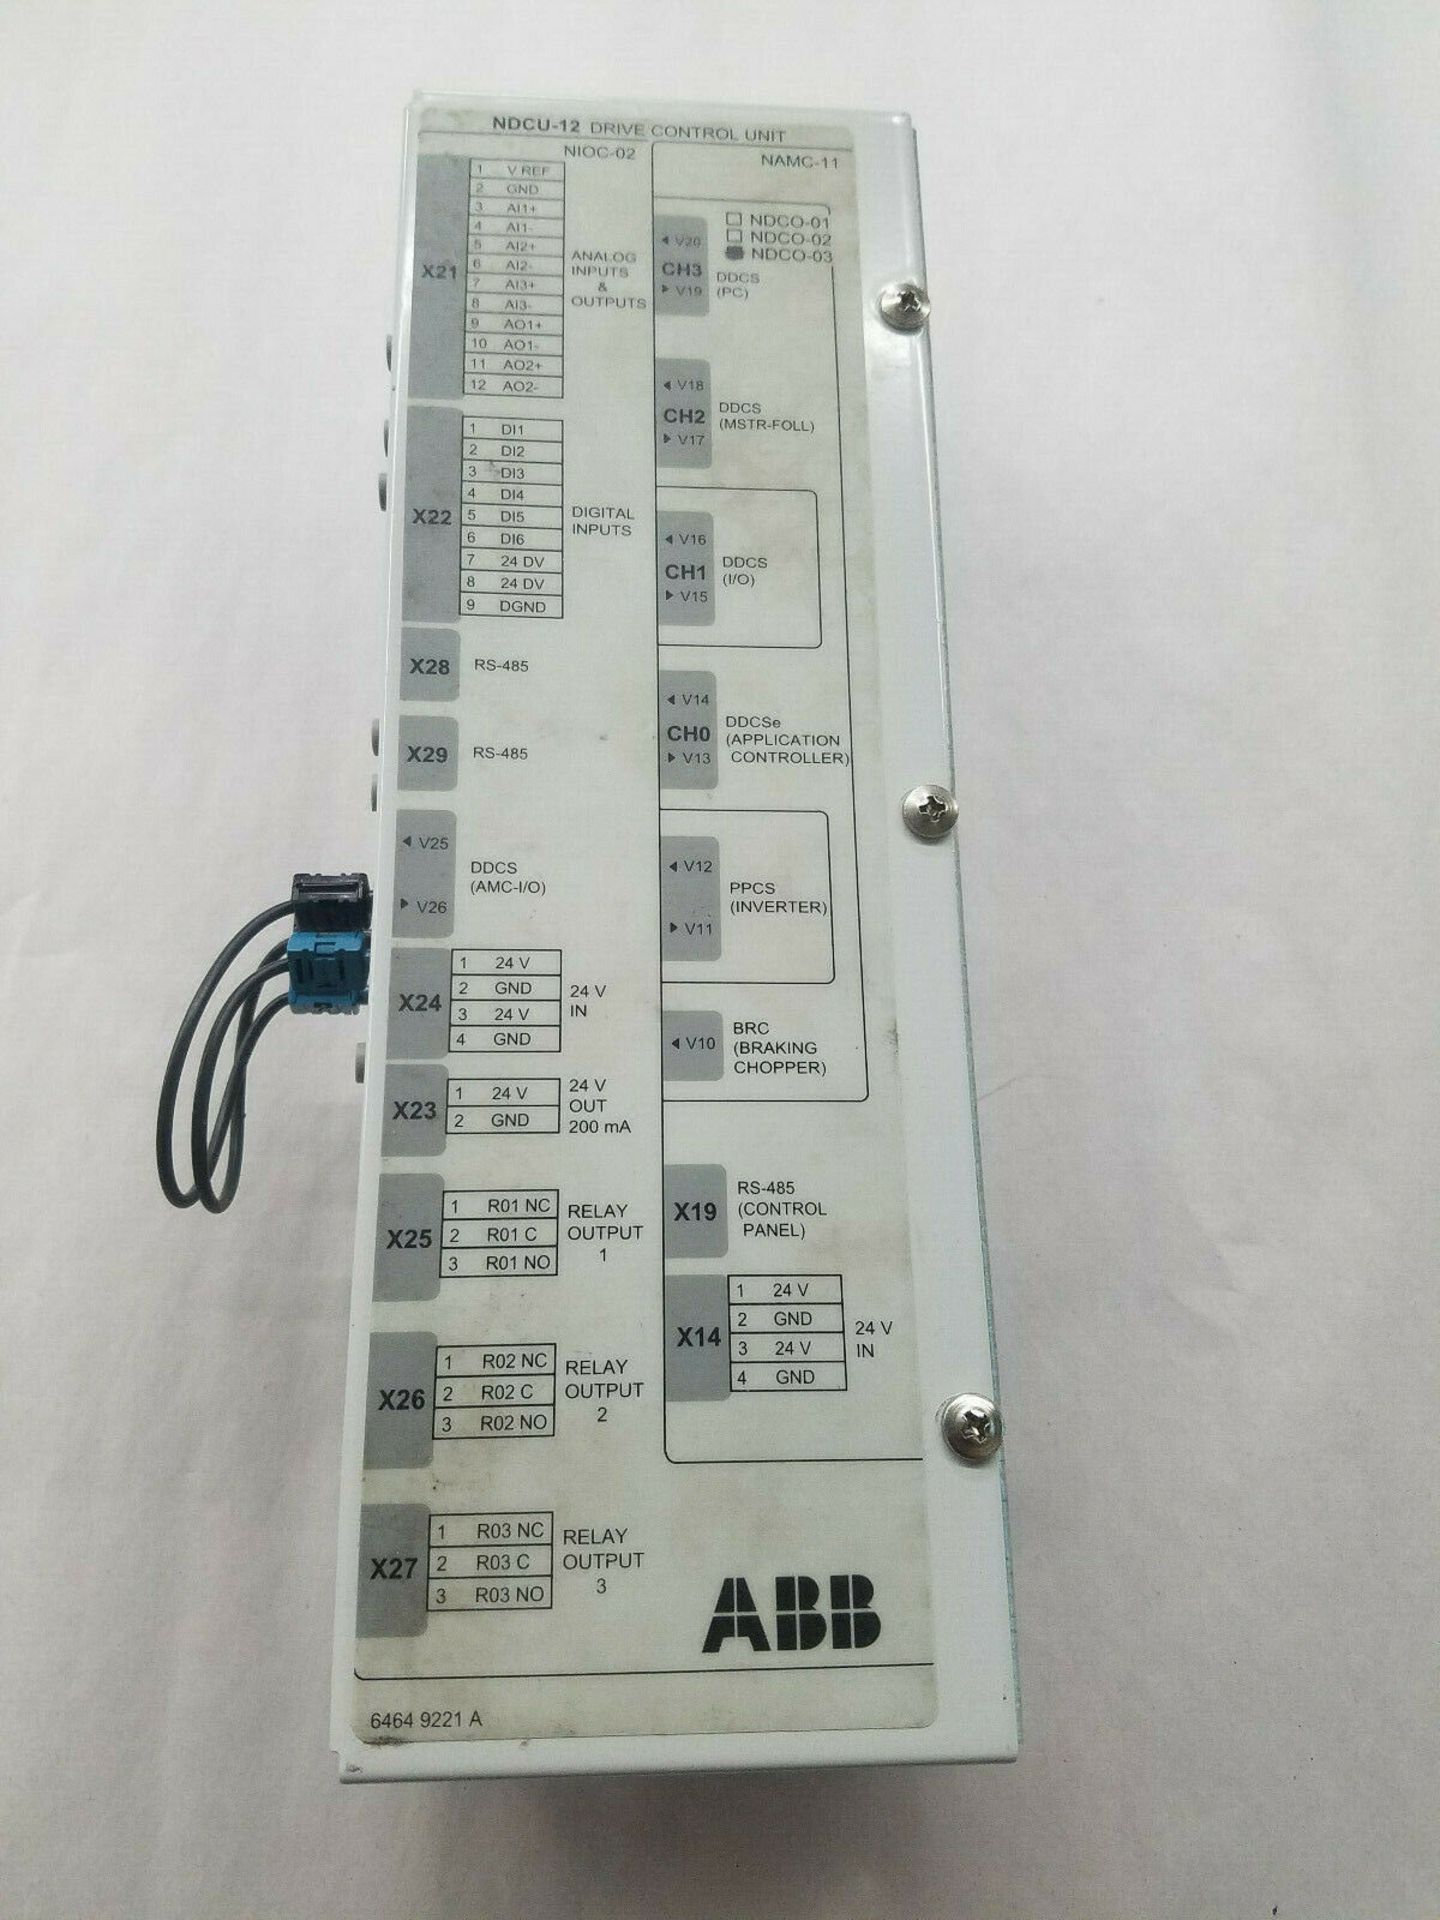 ABB NDCU-12 Drive Control Unit